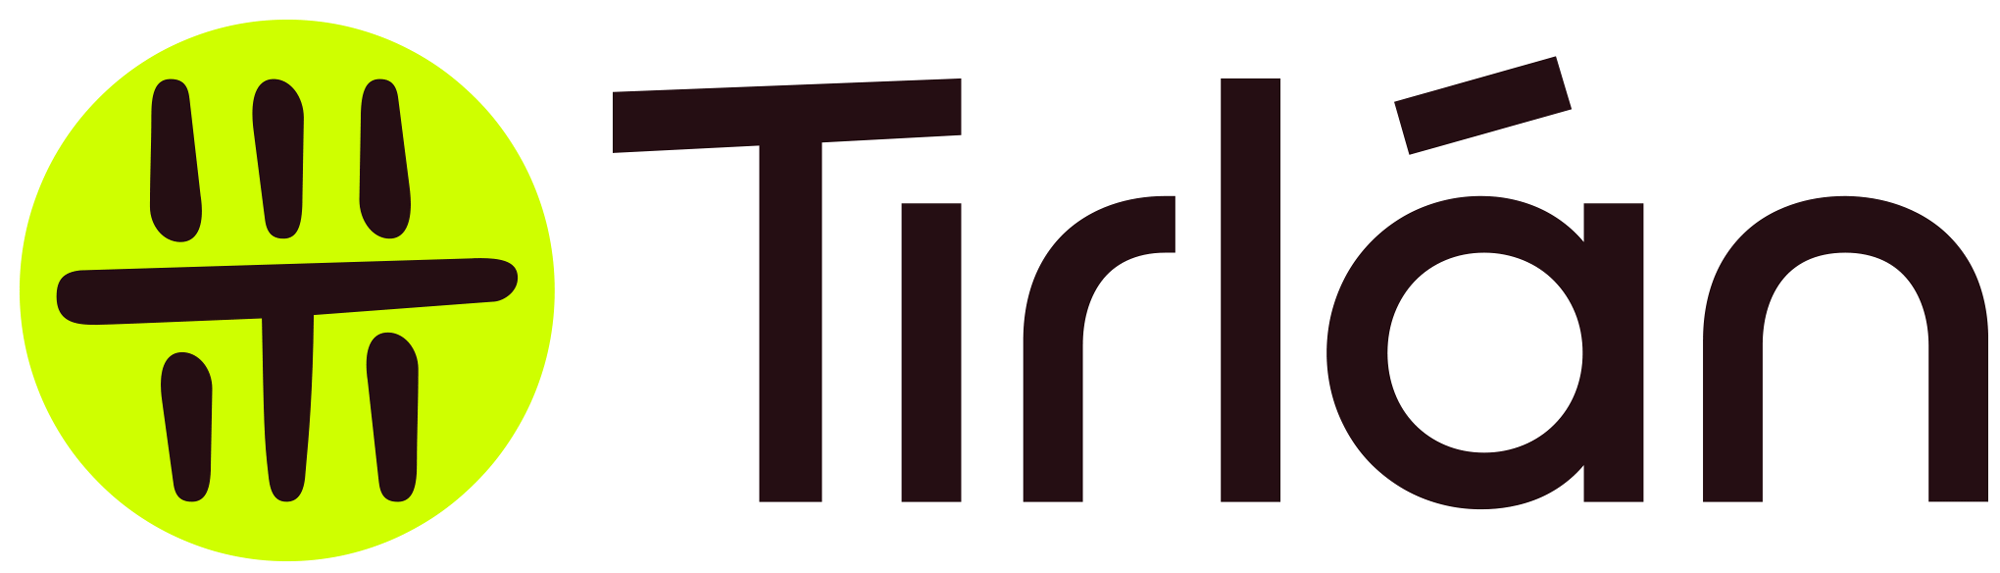 tirlan_logo